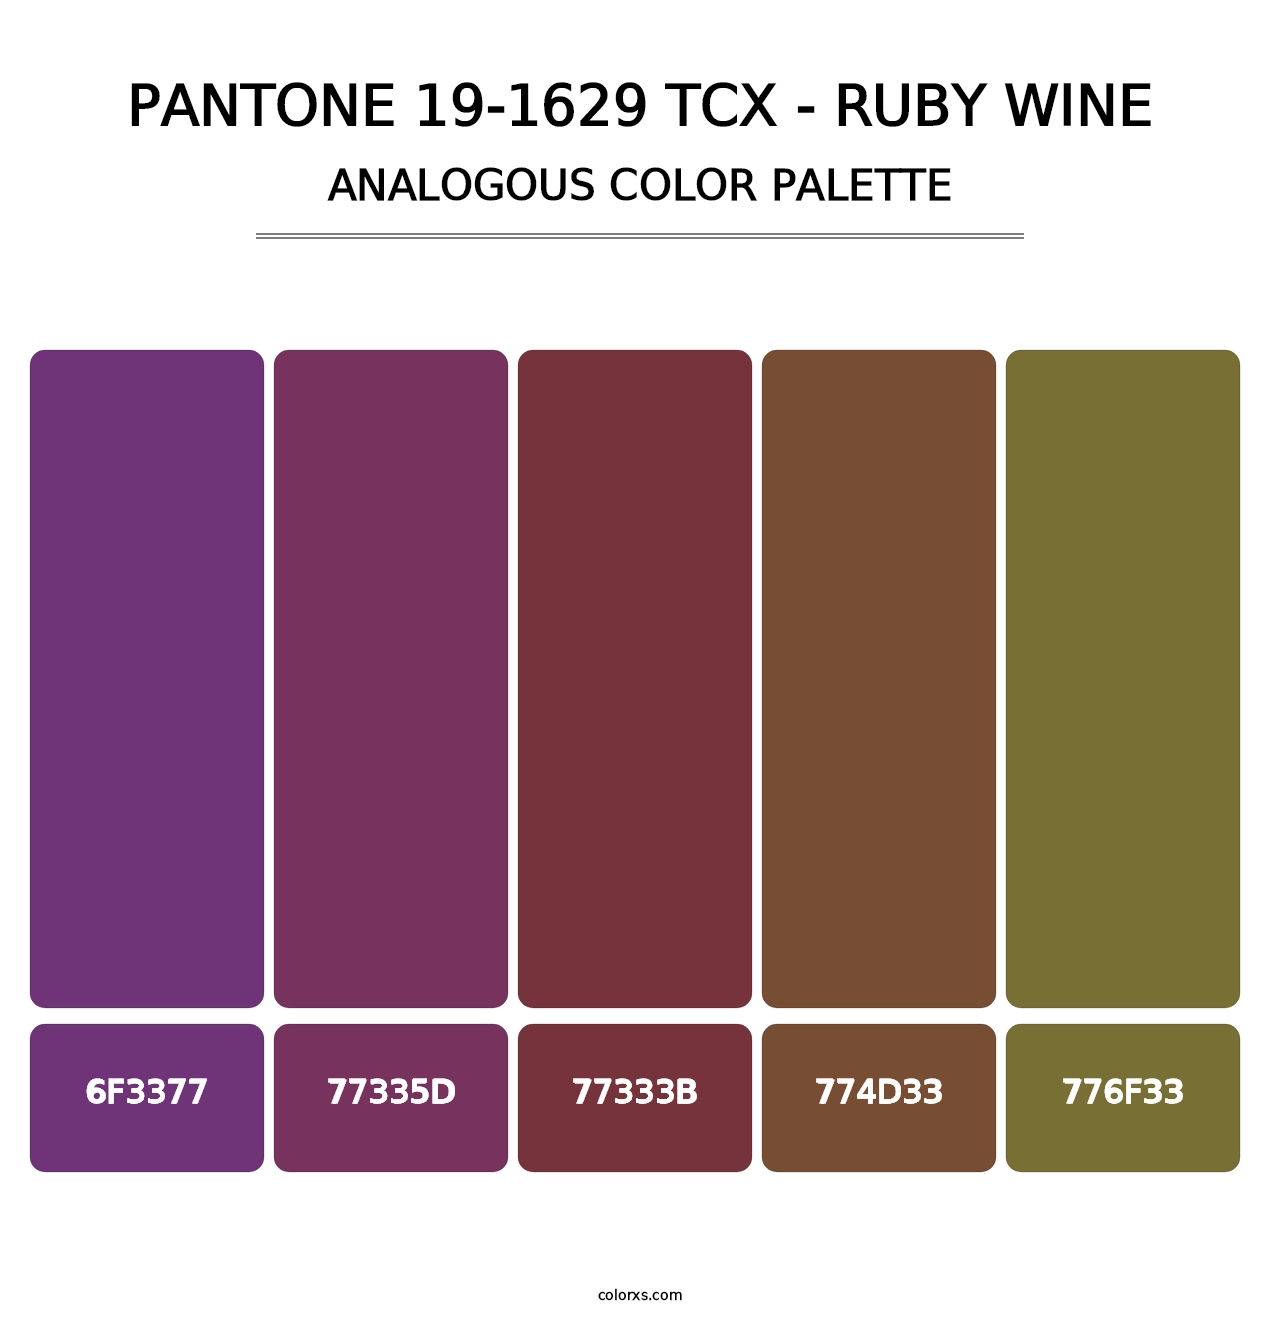 PANTONE 19-1629 TCX - Ruby Wine - Analogous Color Palette